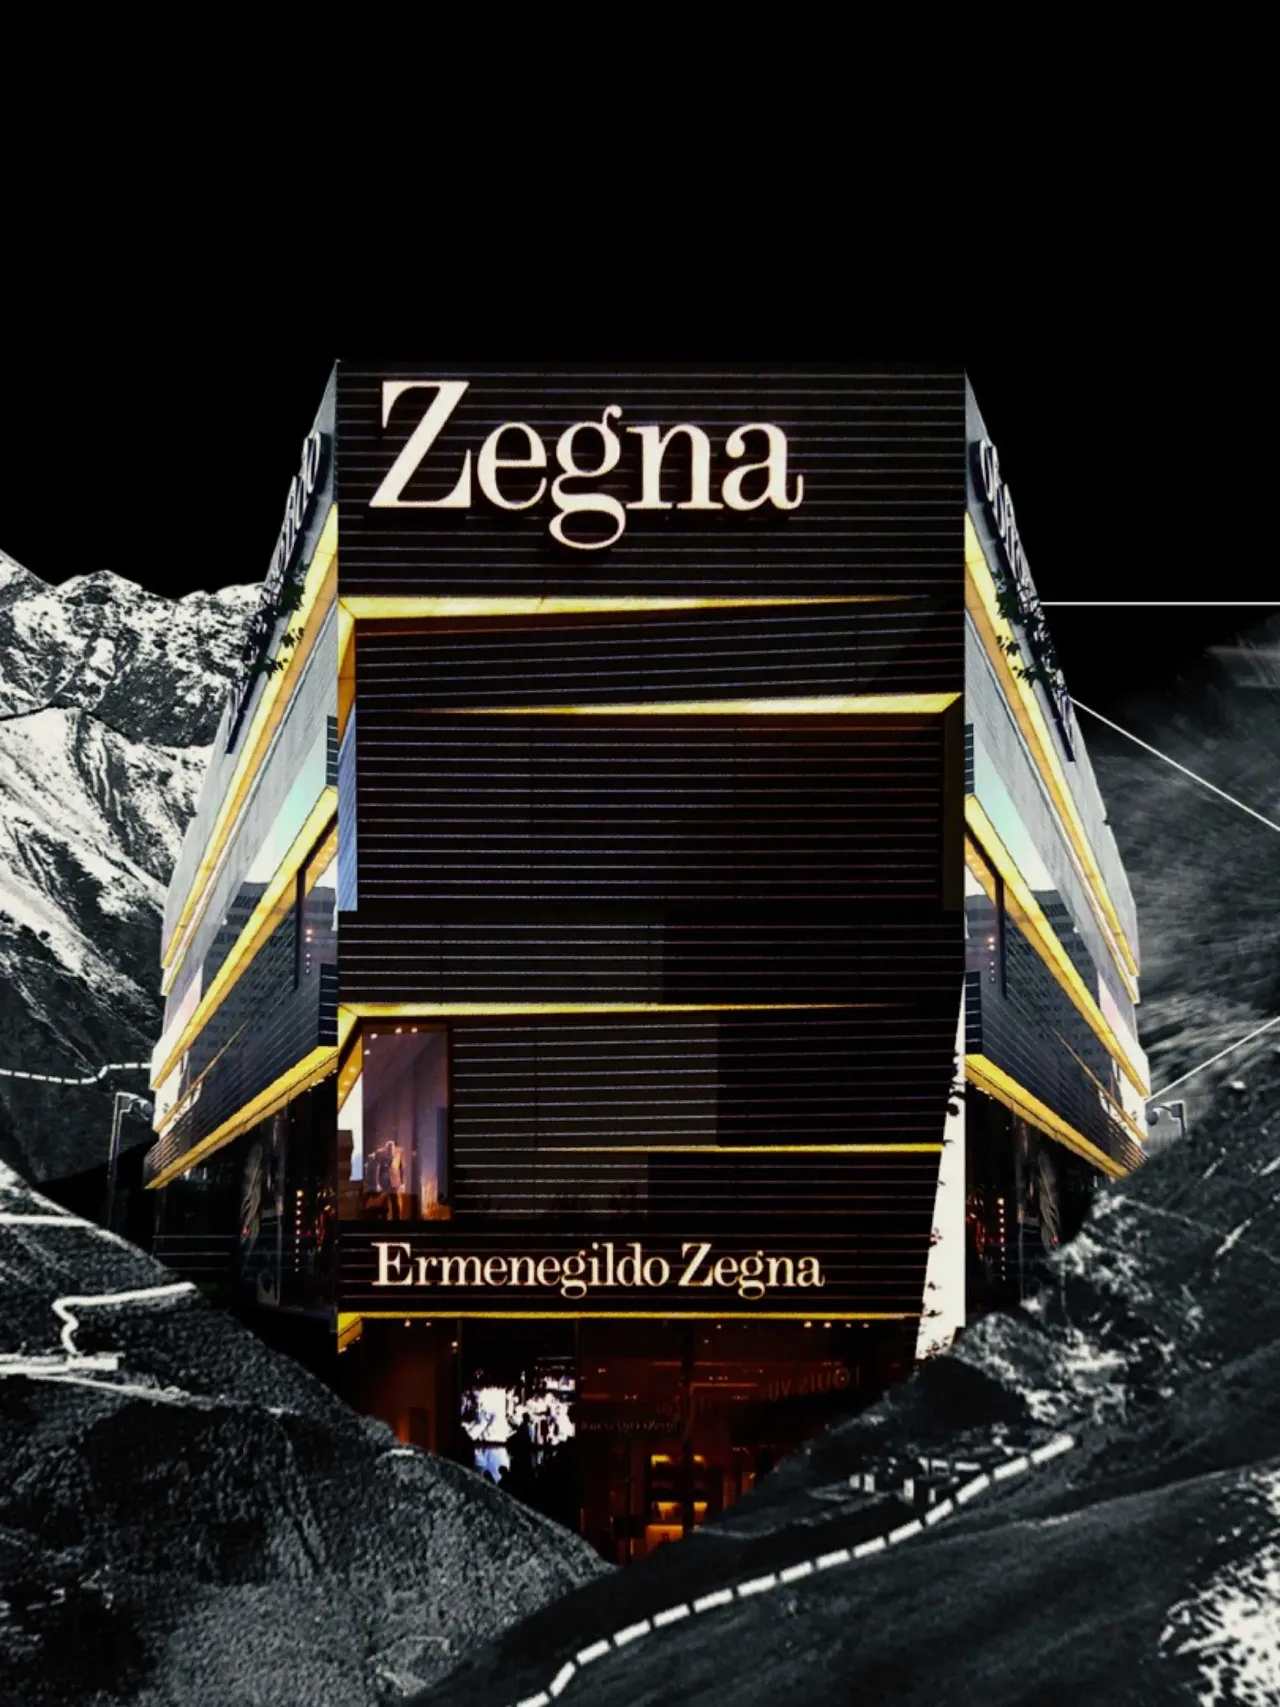 超レア:最高級ラインゼニア:Zegna:Ermenegildo Zegna